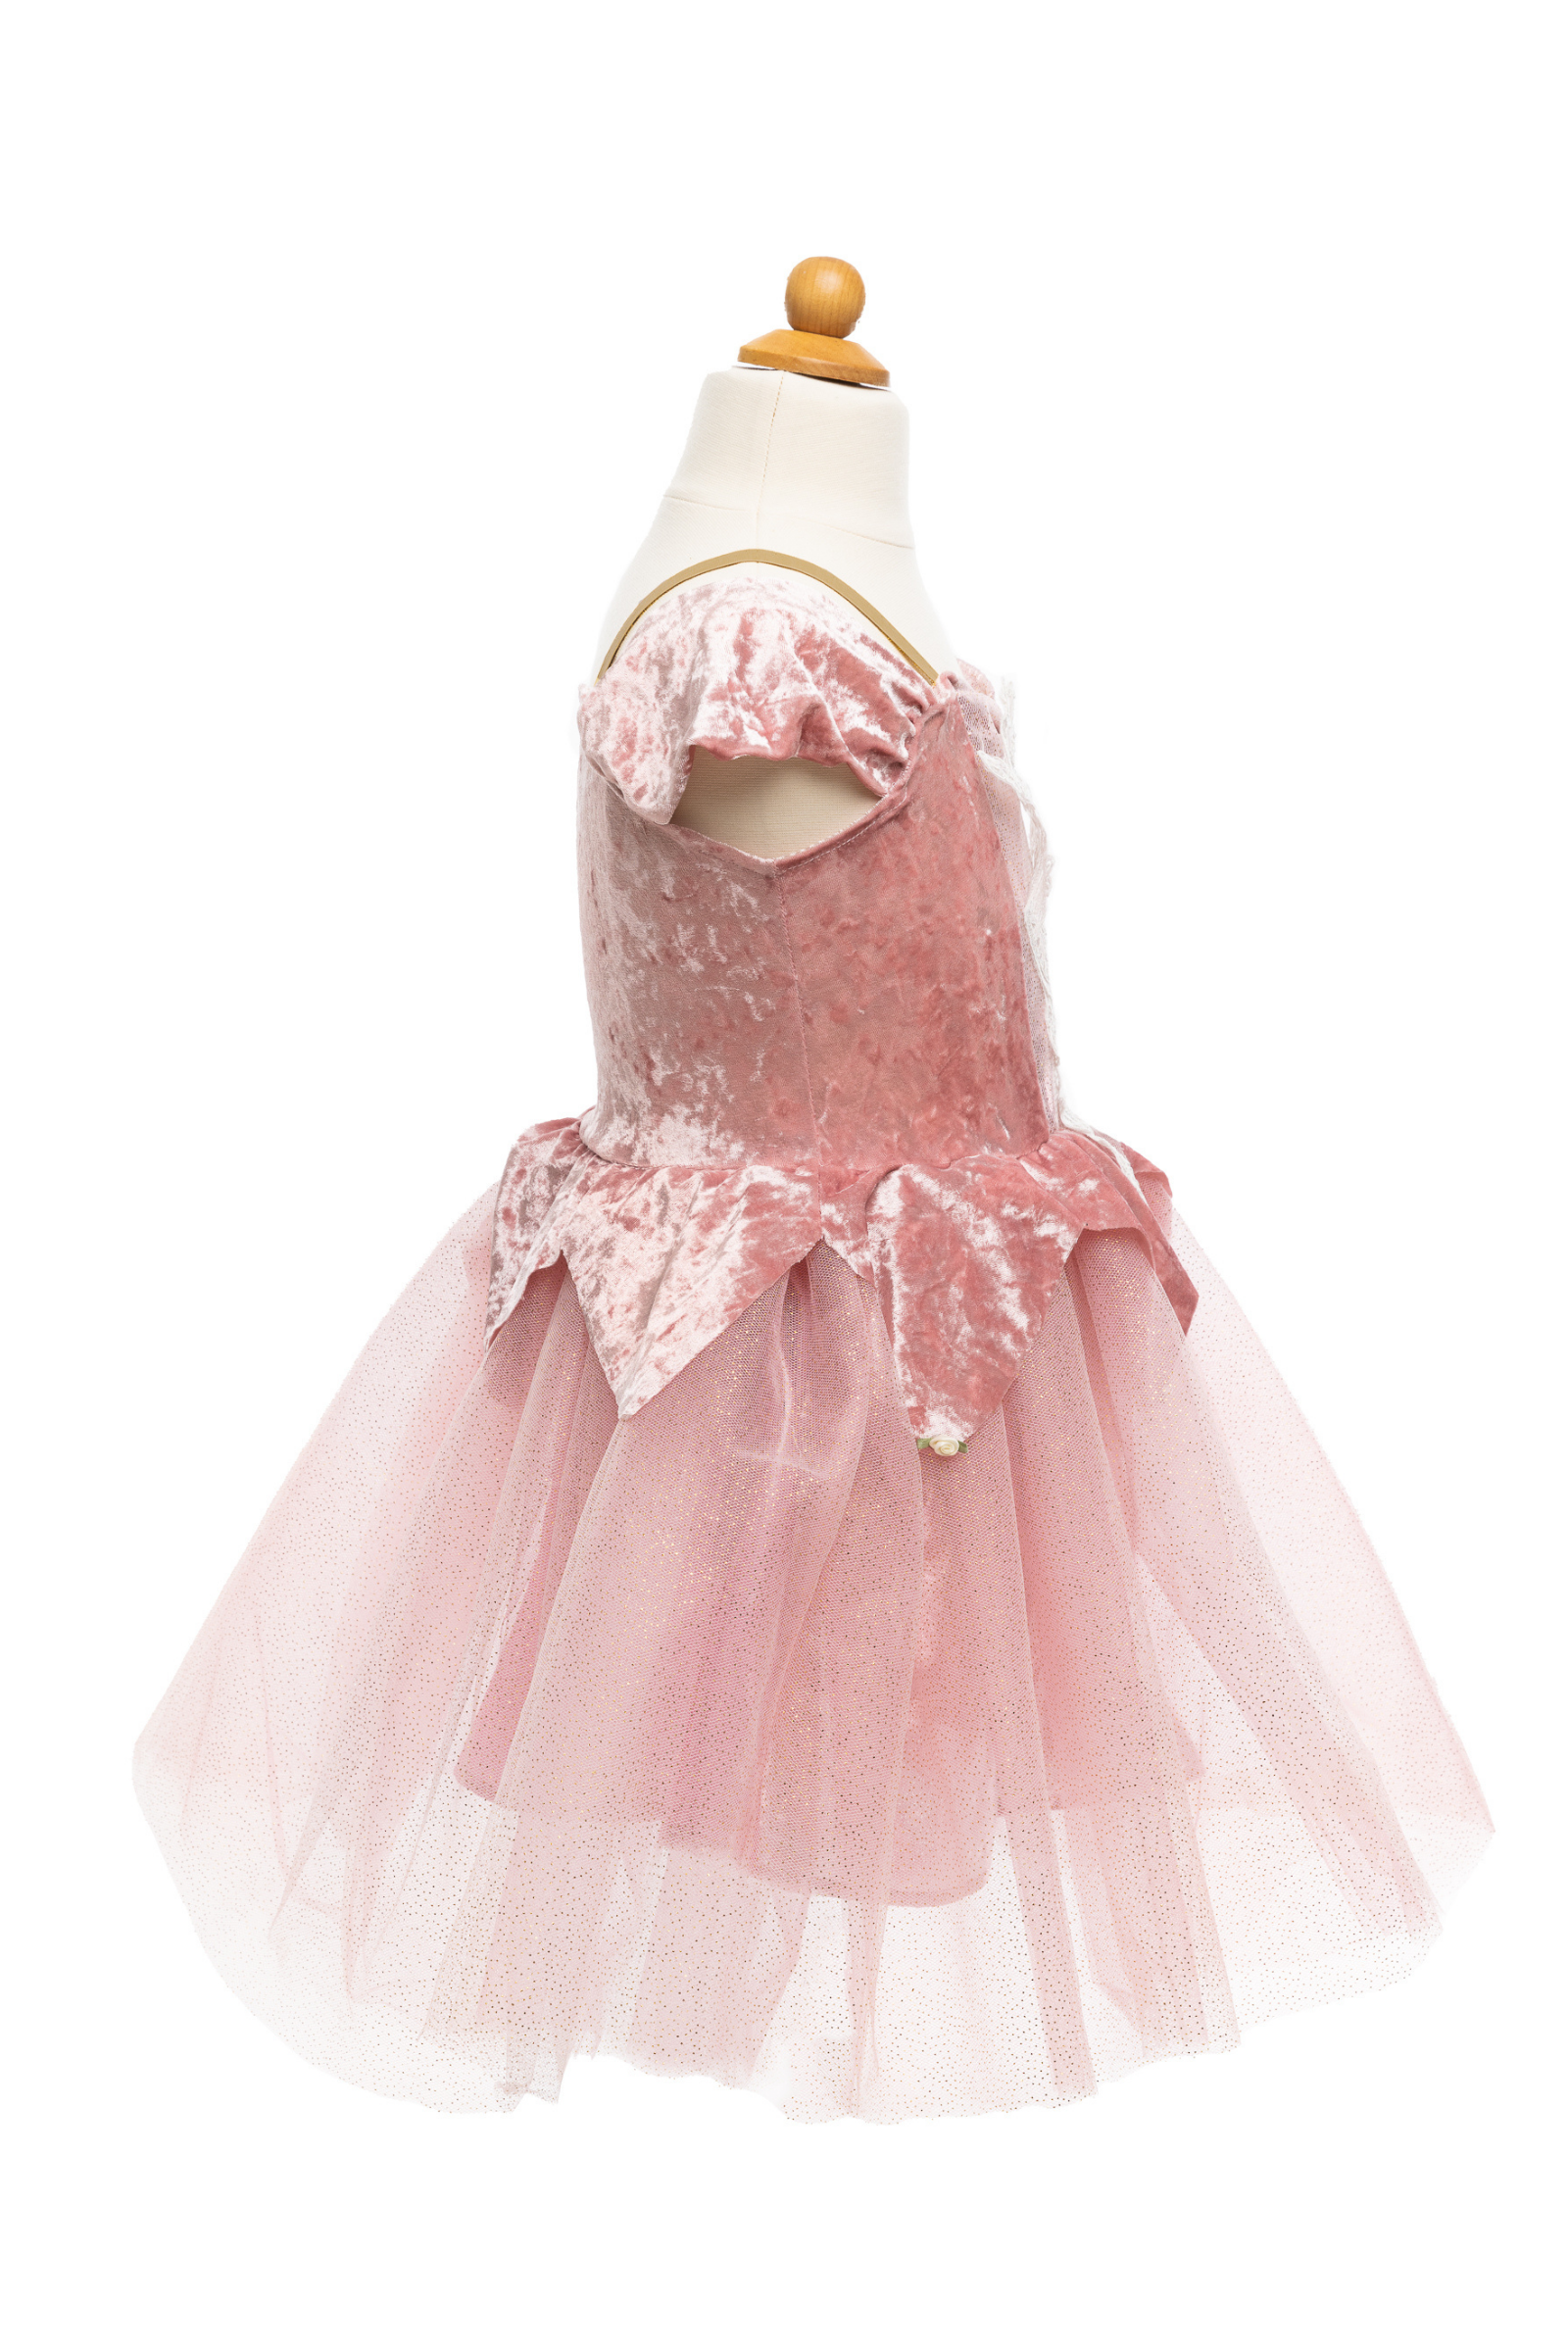 Kontoret kål Afdeling Holiday Ballerina Dress, Dusty Rose, Size 3-4